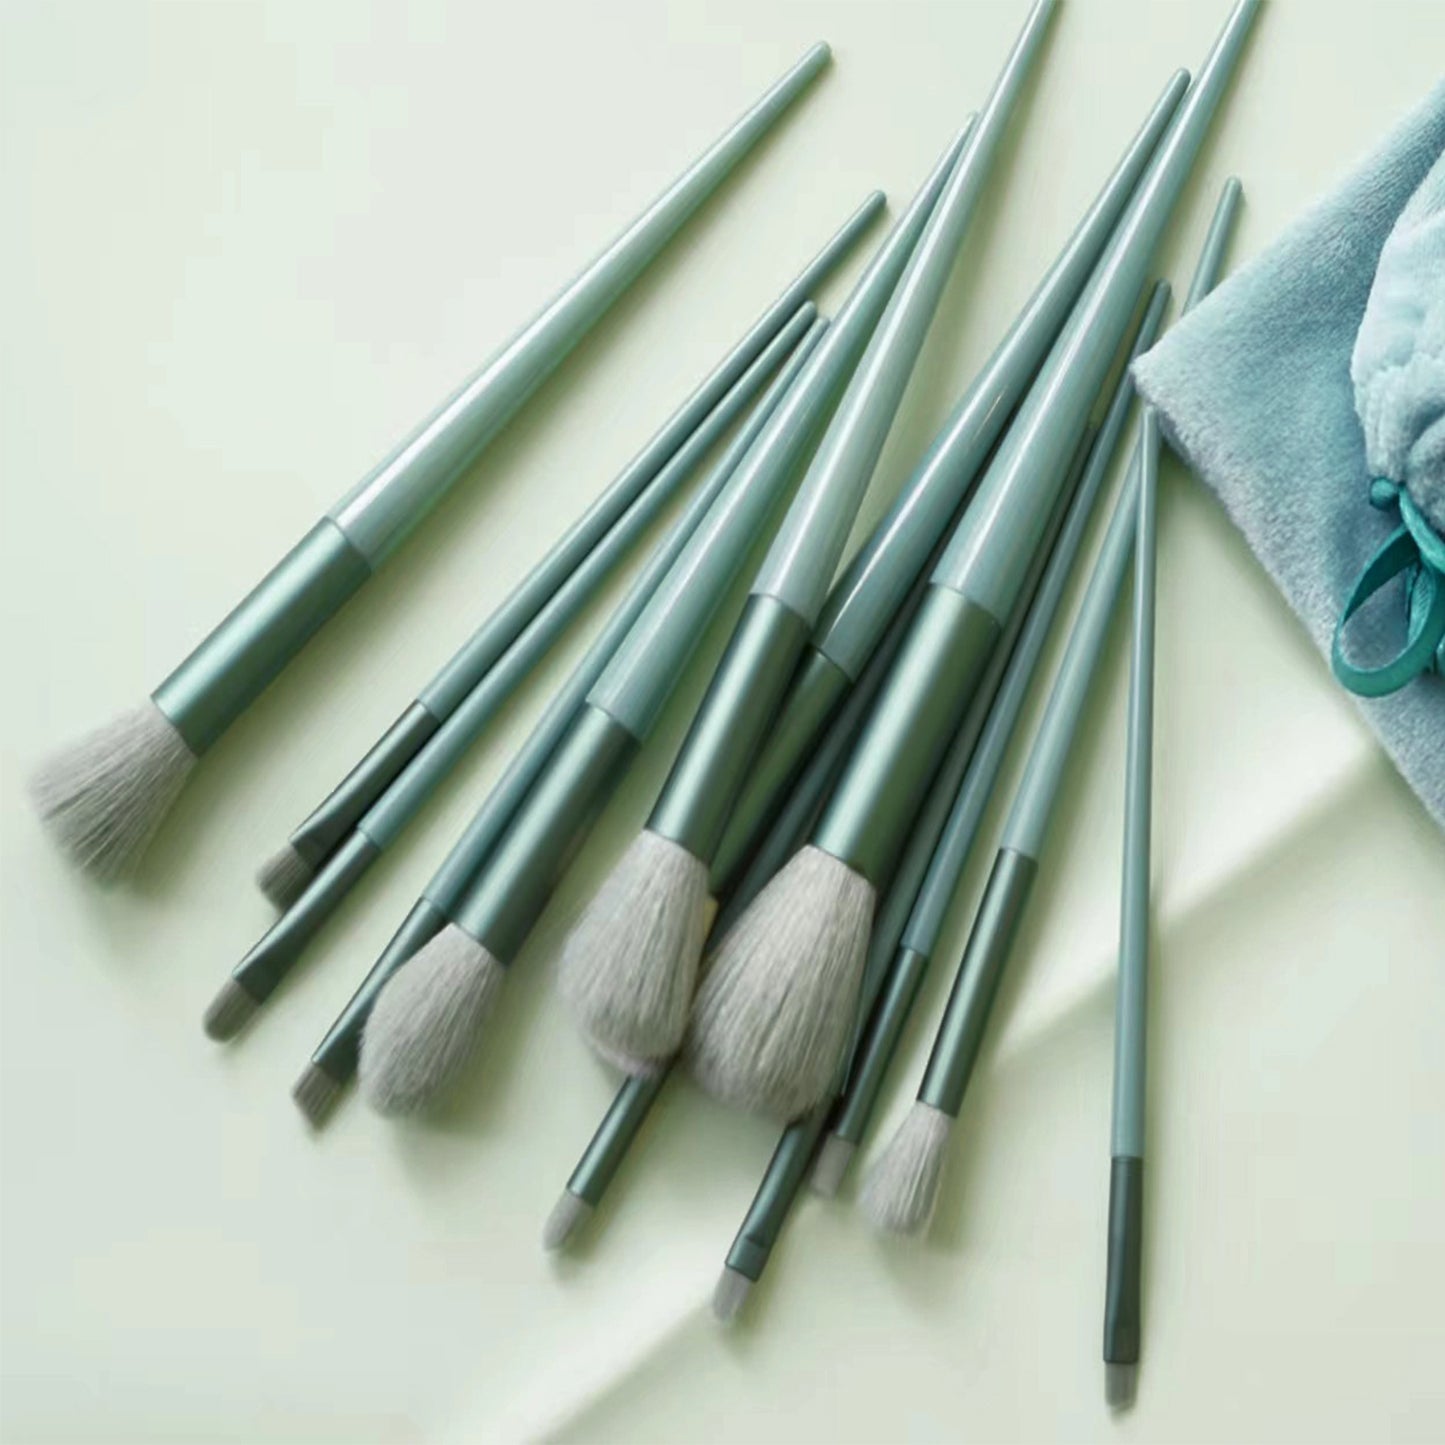 13 Pcs Professional Makeup Brushes, Eyeshadow Brushes, Blush Brushes